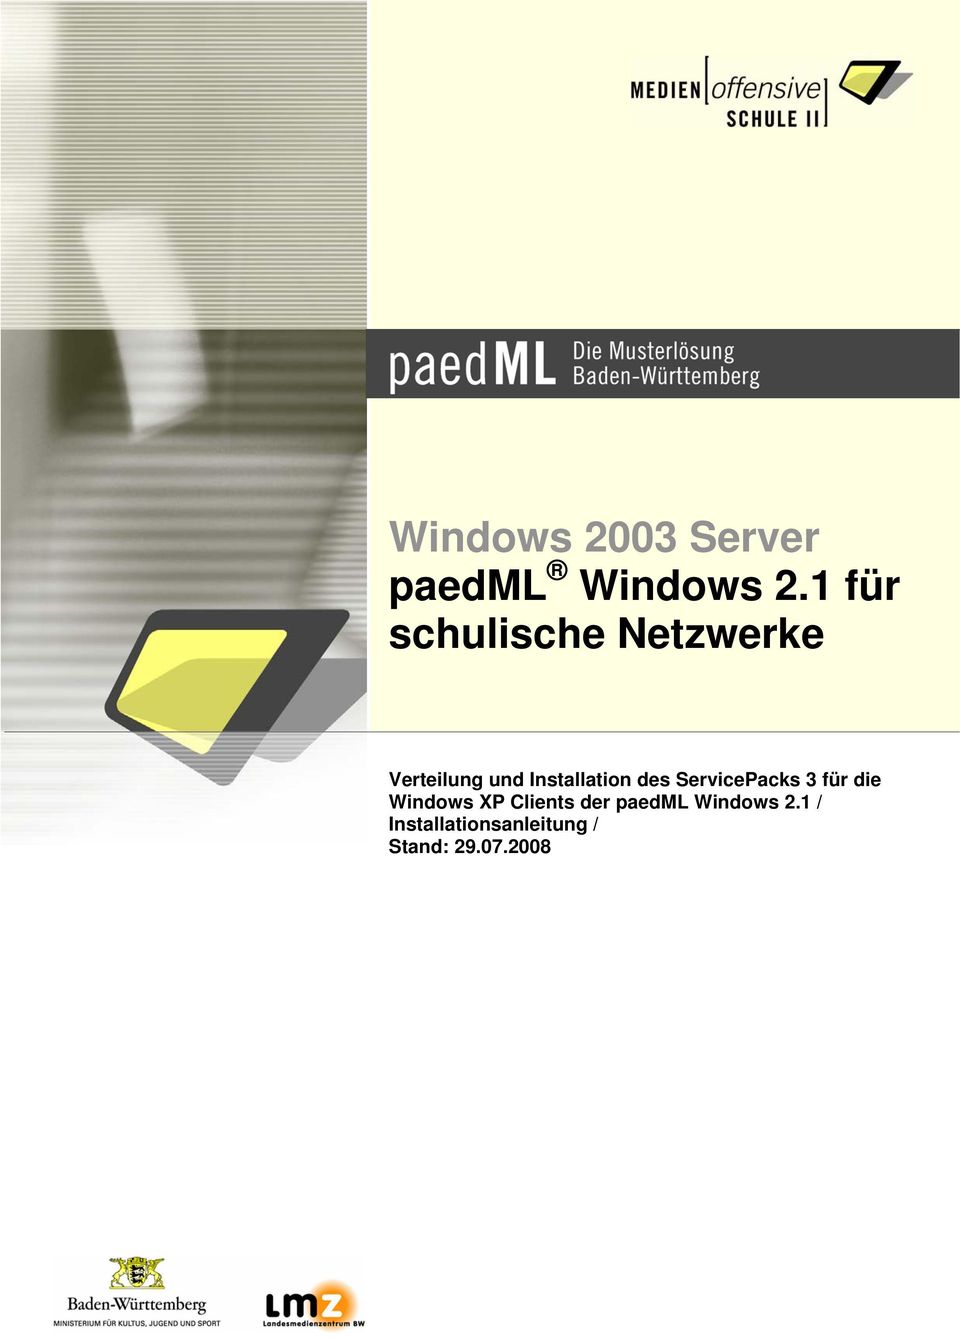 Installation des ServicePacks 3 für die Windows XP